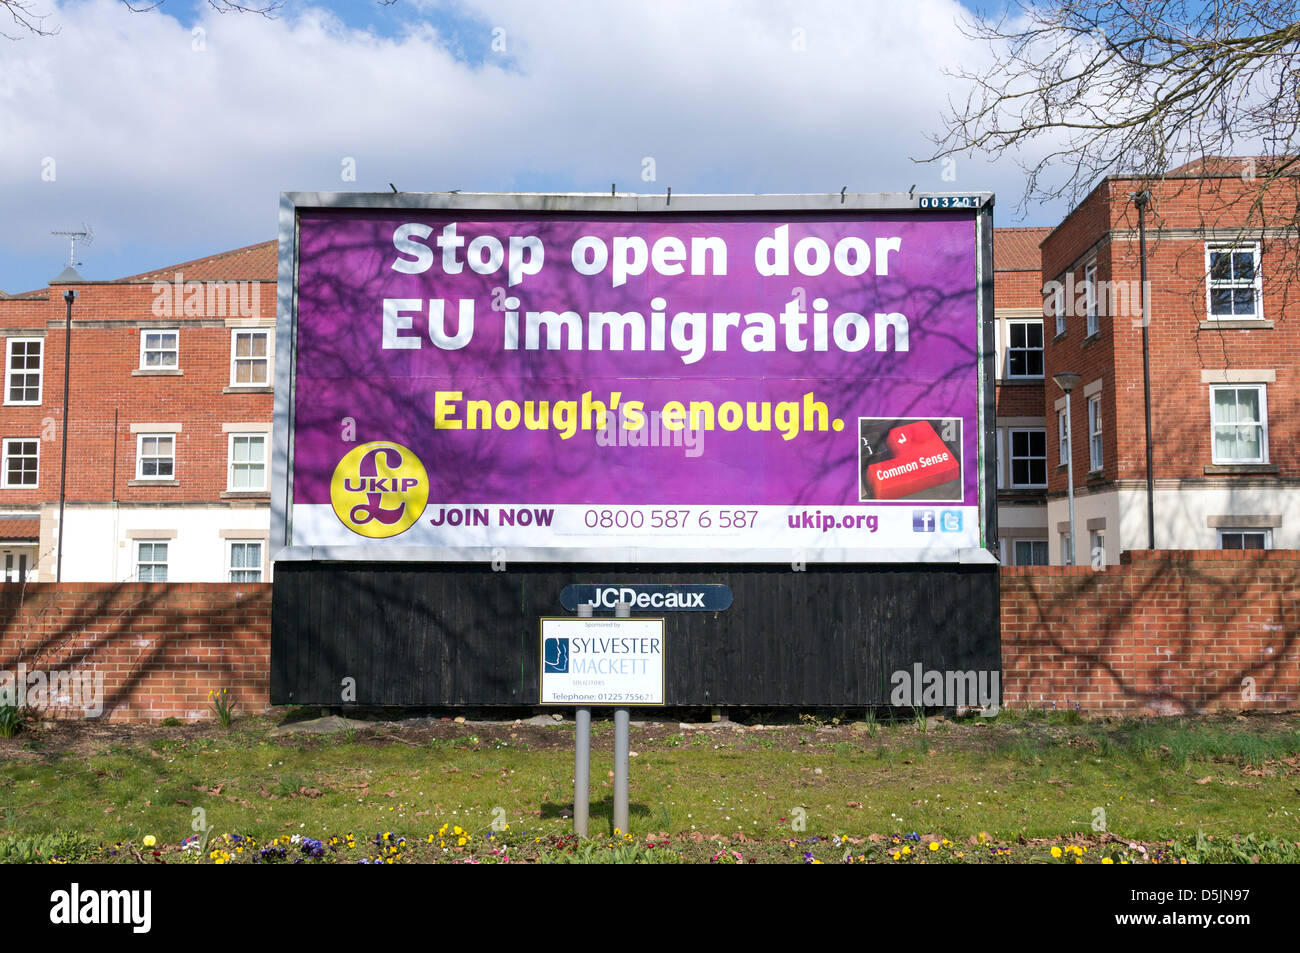 United Kingdom Independence Party poster de l'UKIP sur de grands panneaux publicitaires en bordure de leur point de vue sur les politiques d'immigration de l'UE Banque D'Images